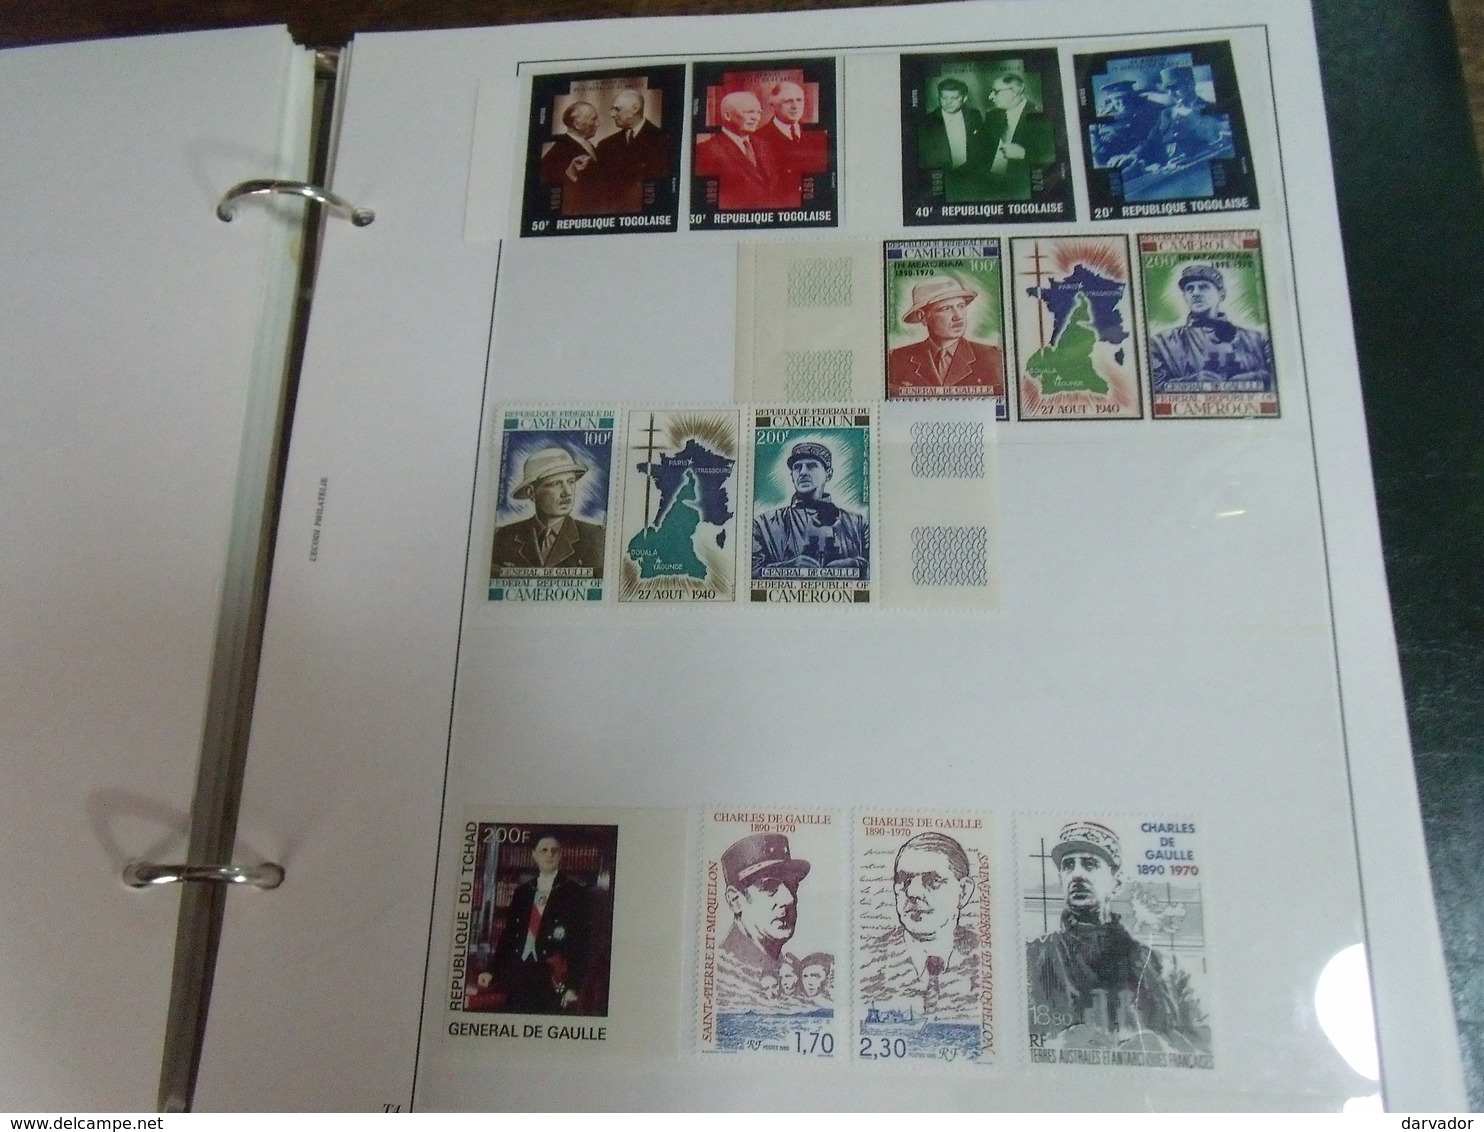 Collection / Général Charles De gaulle ; divers timbre oblitérés, enveloppes , feuille ** , et timbres neuf ** MNH TB